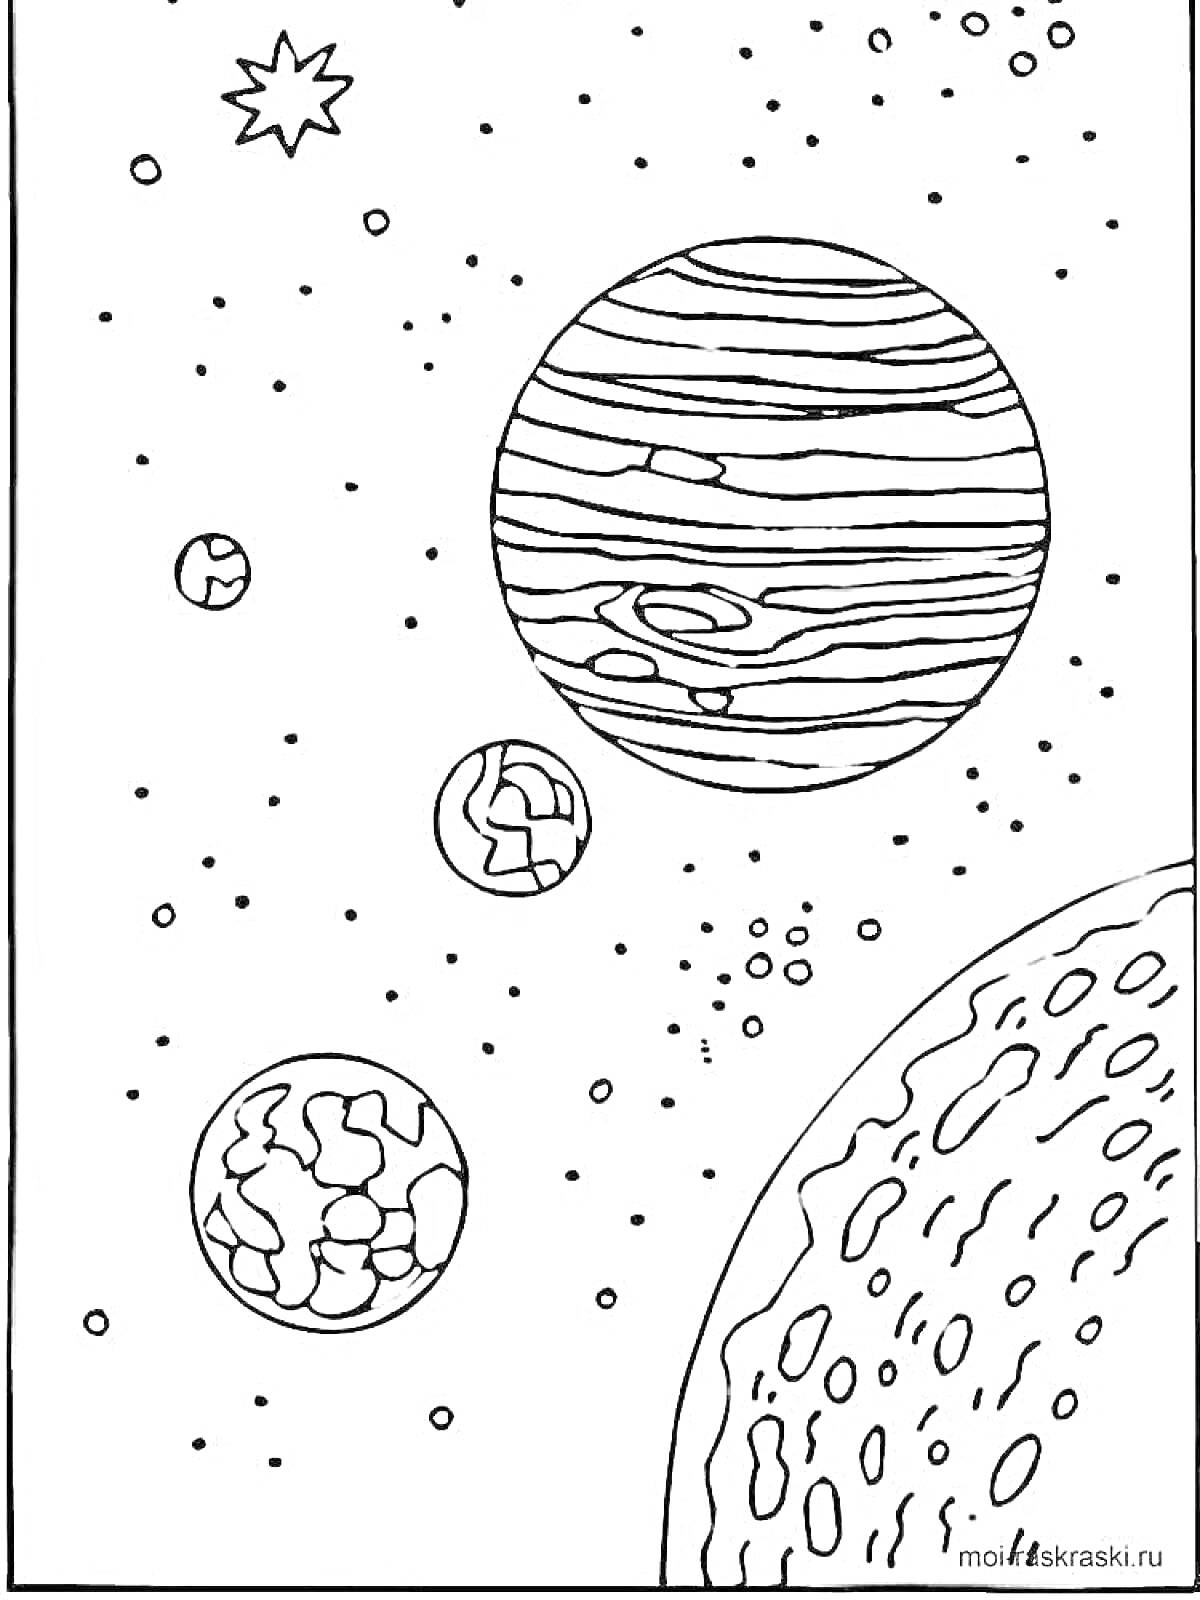 Раскраска Галактика с пятью планетами, звездой и космическими объектами